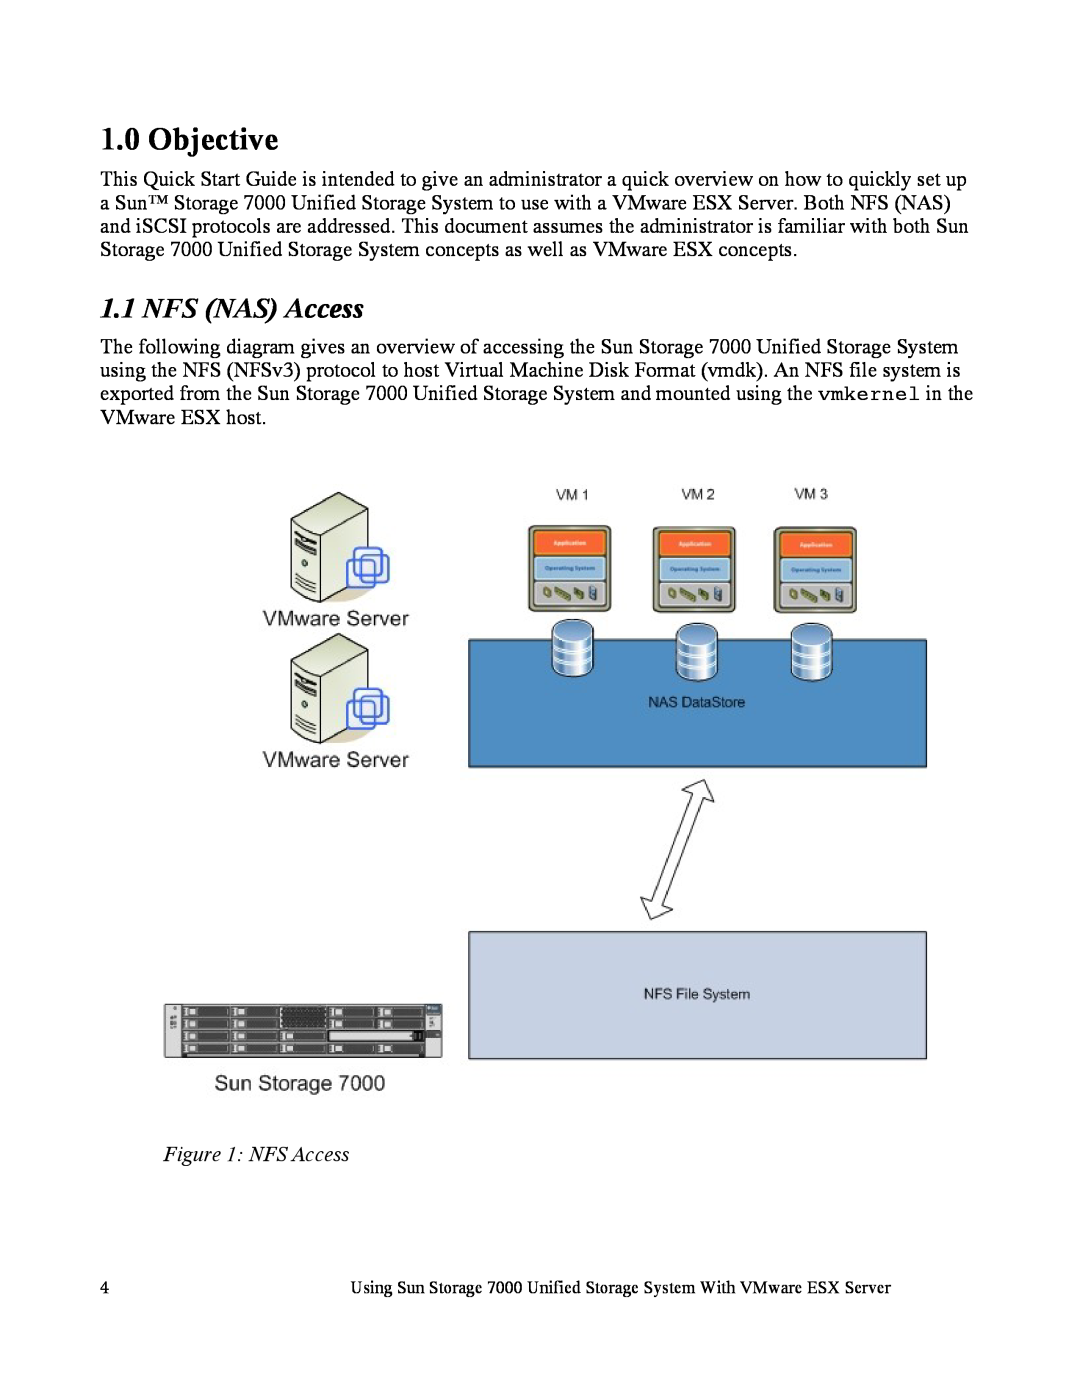 Sun Microsystems 7000 manual Objective, NFS NAS Access, NFS Access 